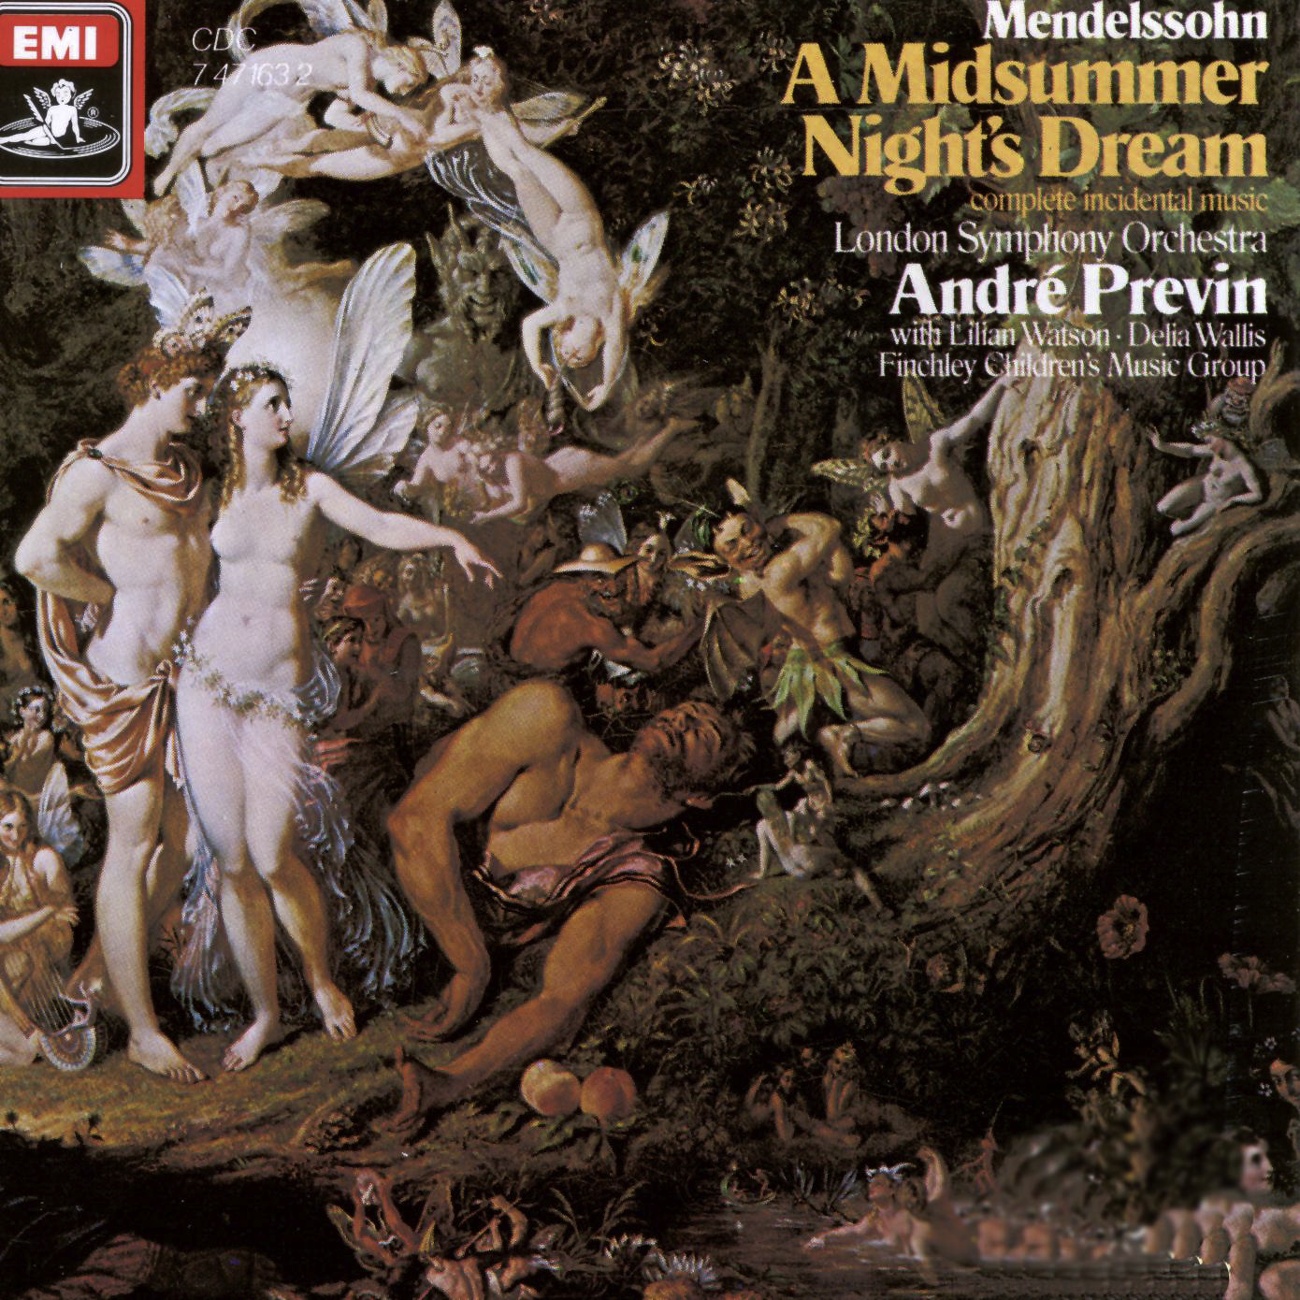 Mendelssohn - A Midsummer Night's Dream (incidental music)